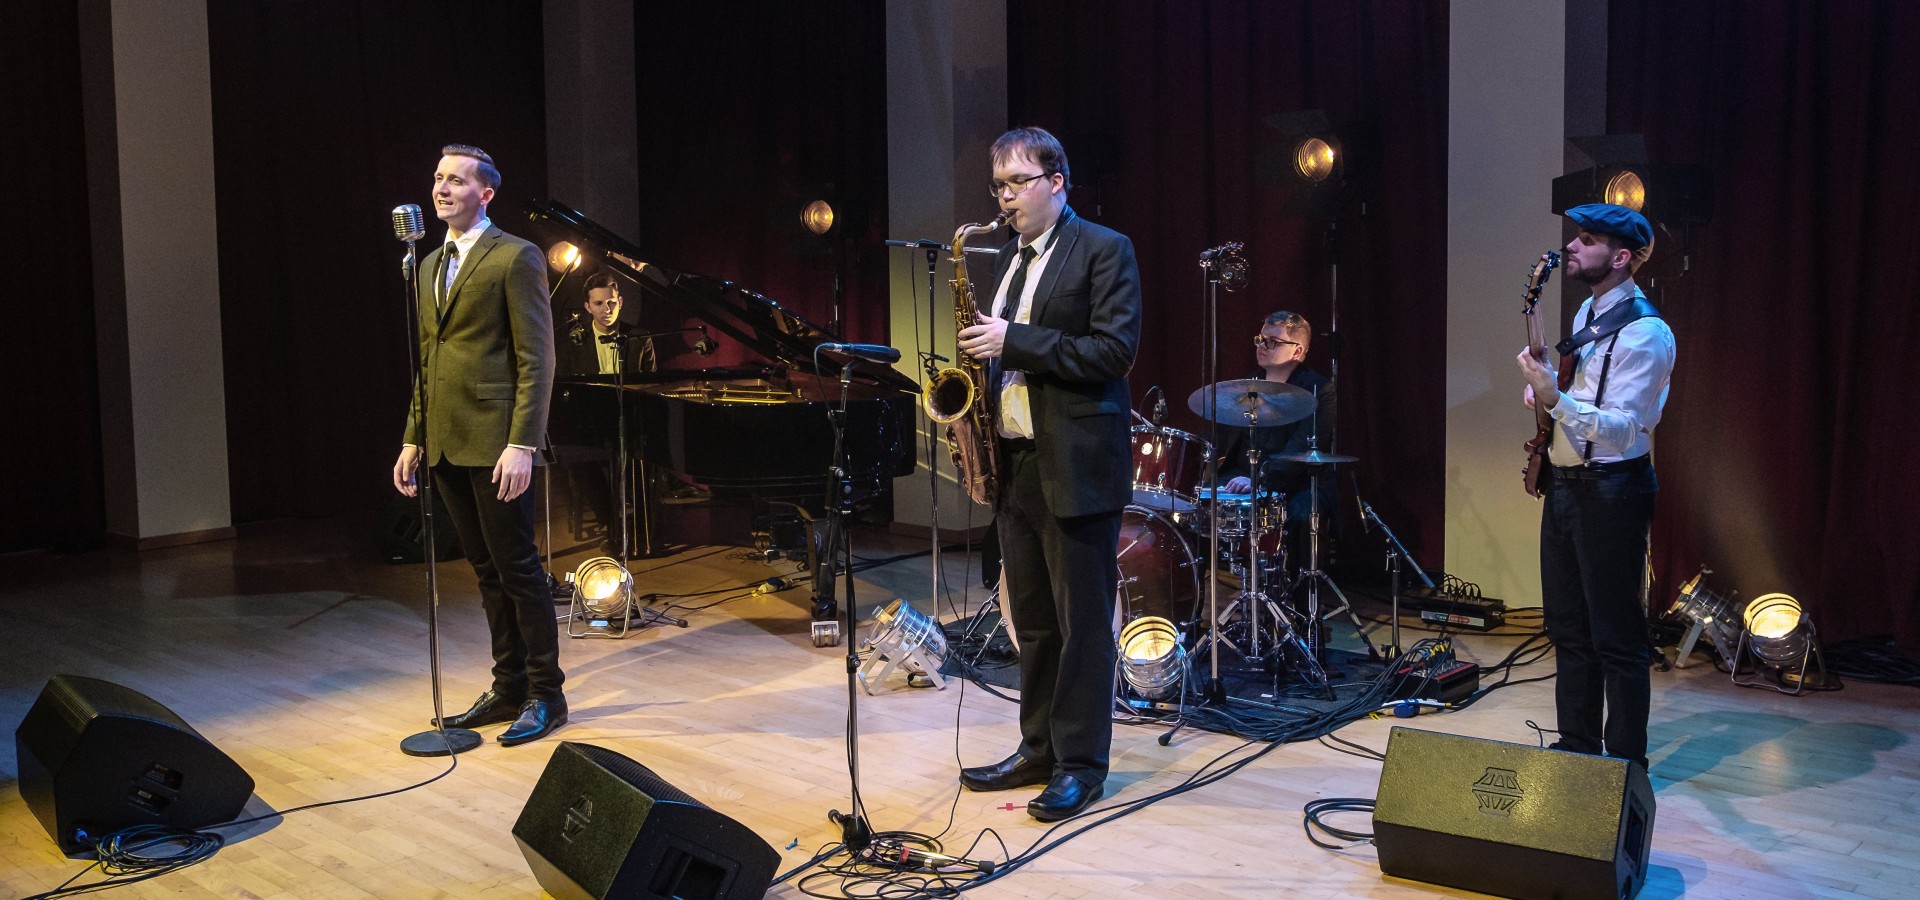 Jazz Wedding Band Hire London | The Hudson Jazz Band